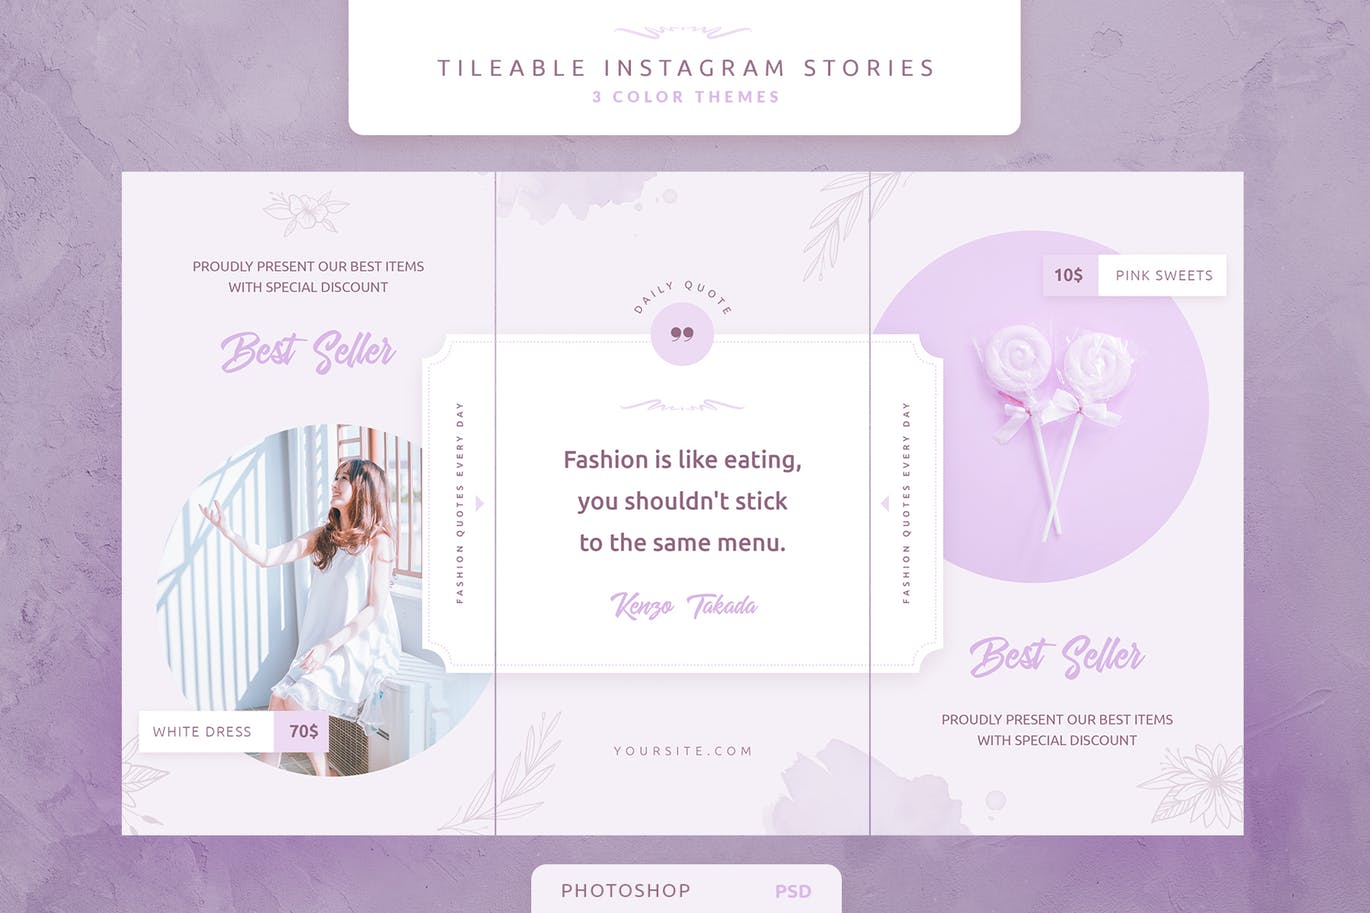 创意三列式Instagram社交品牌故事设计模板非凡图库精选 Tileable Instagram Stories插图(2)